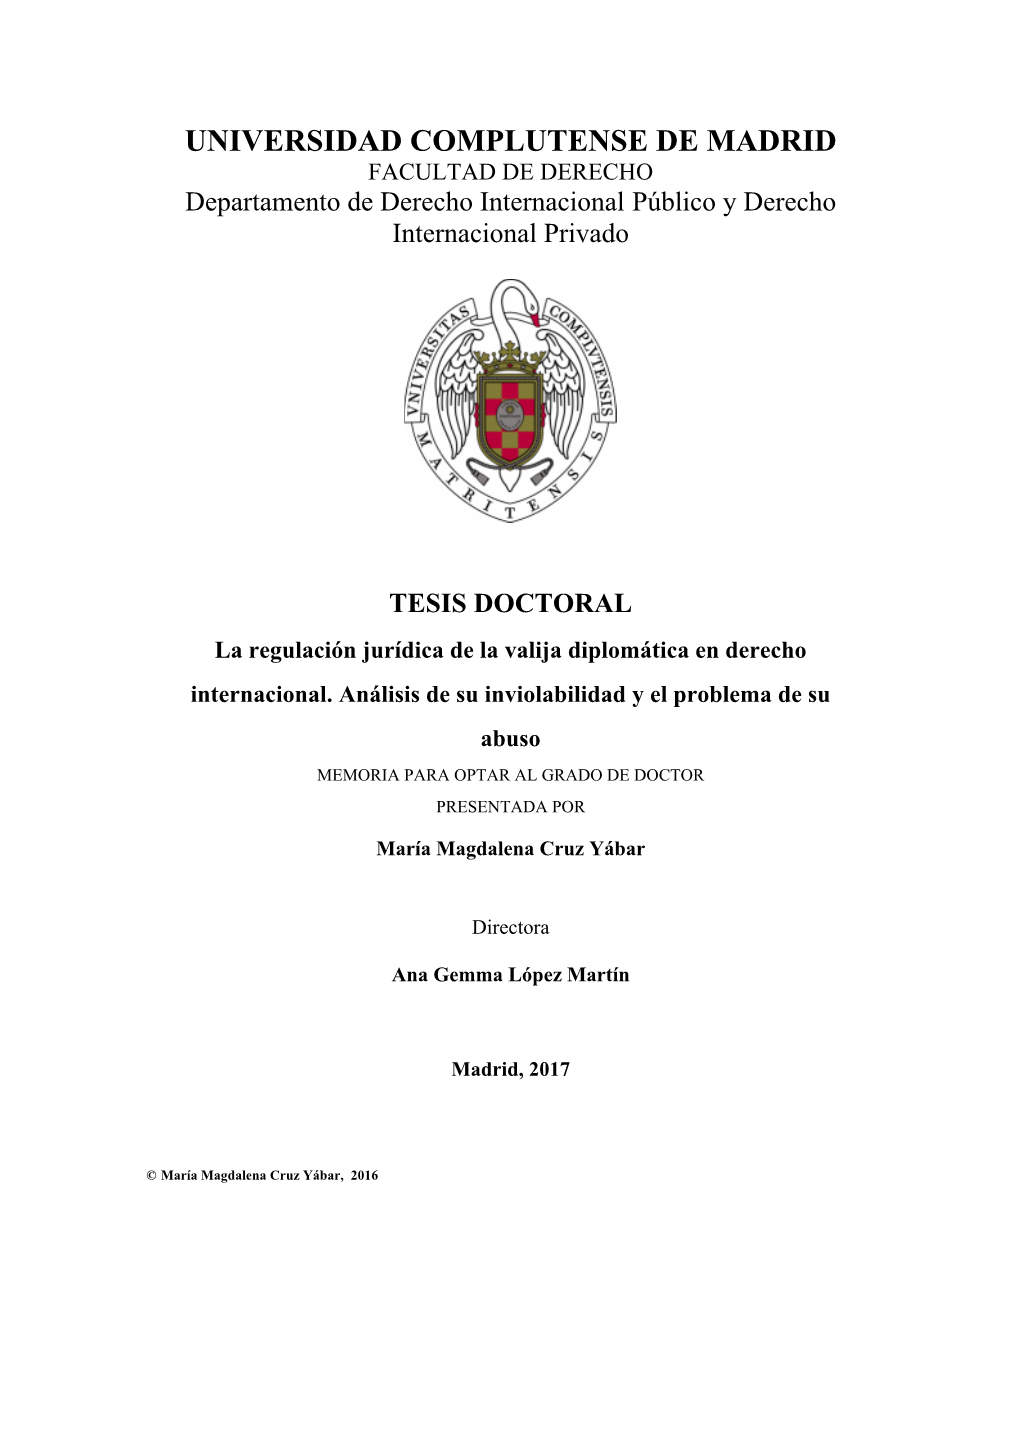 La Regulación Jurídica De La Valija Diplomática En Derecho Internacional. Análisis De Su Inviolabilidad Y El Problema De Su